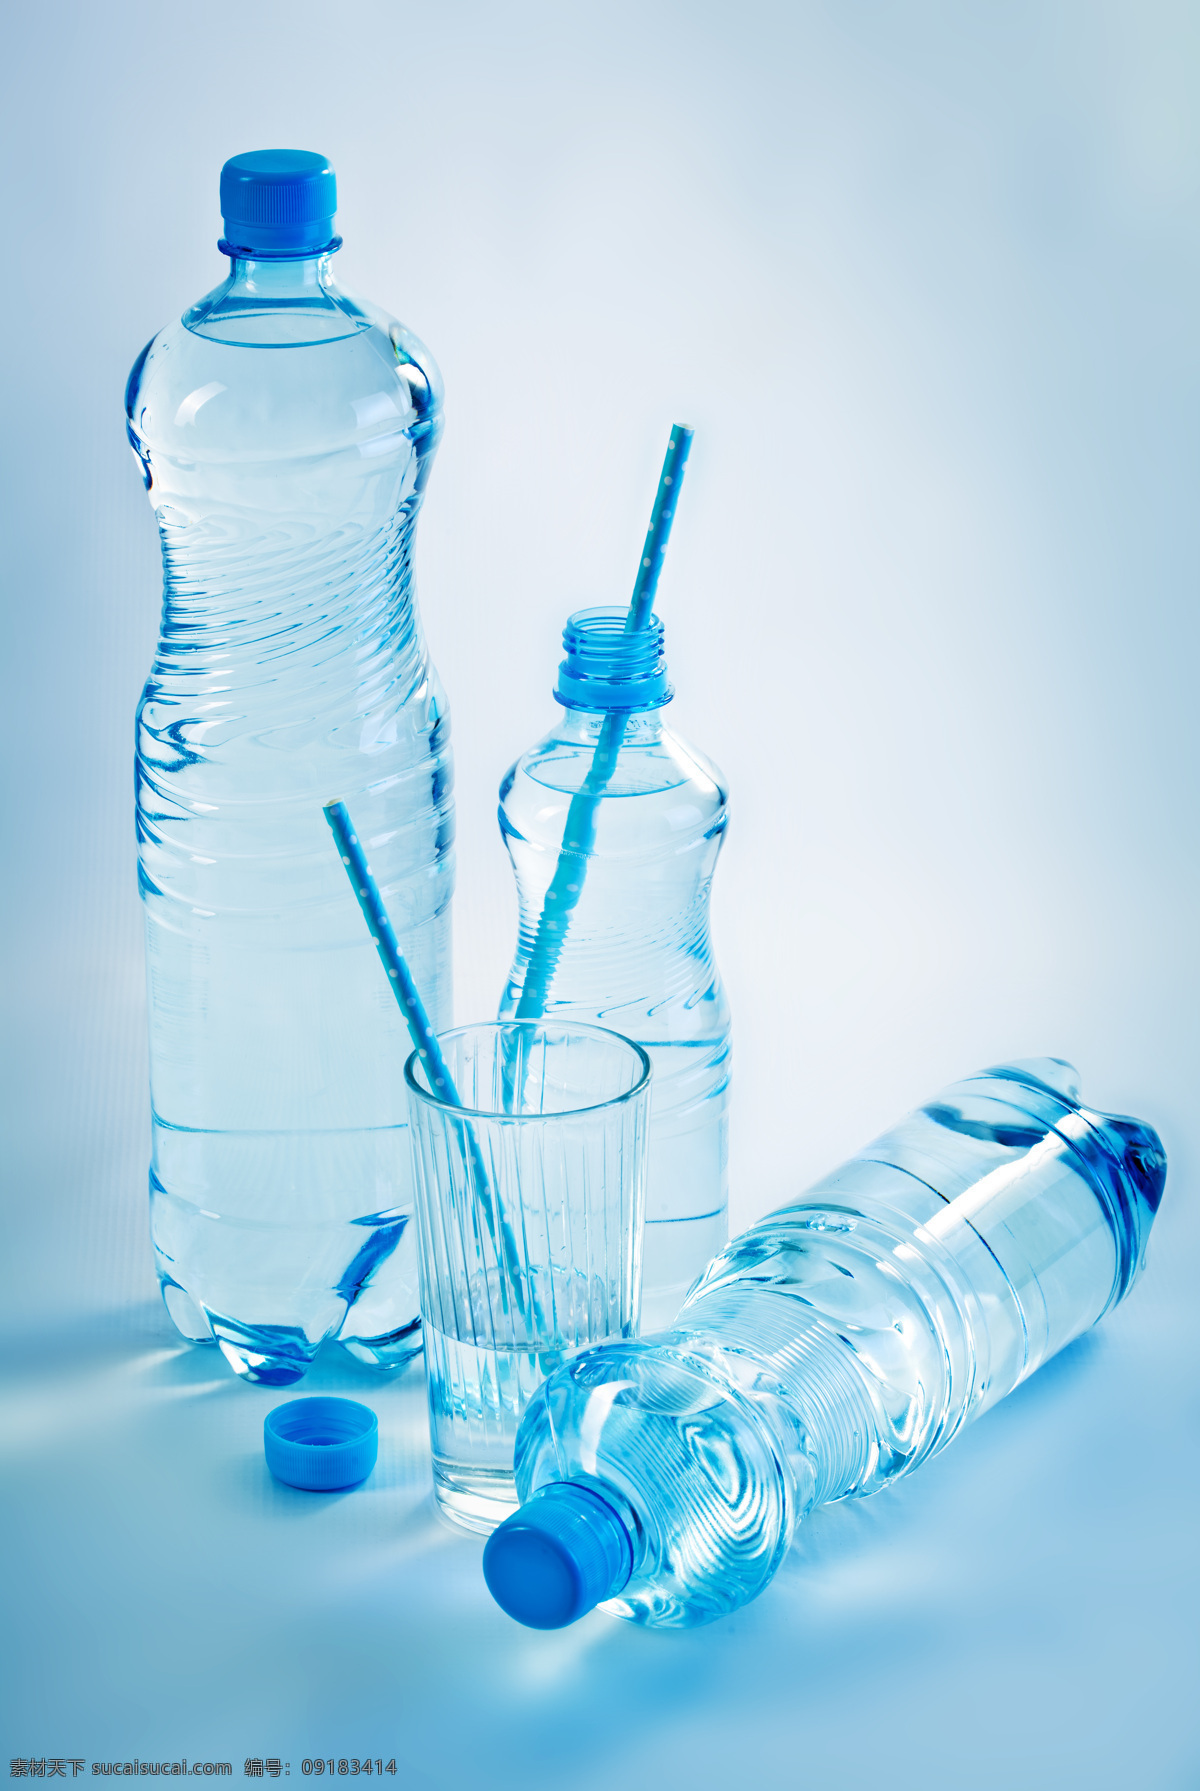 矿泉水 水杯 水 水瓶 瓶子 塑料瓶子 吸管 酒类图片 餐饮美食